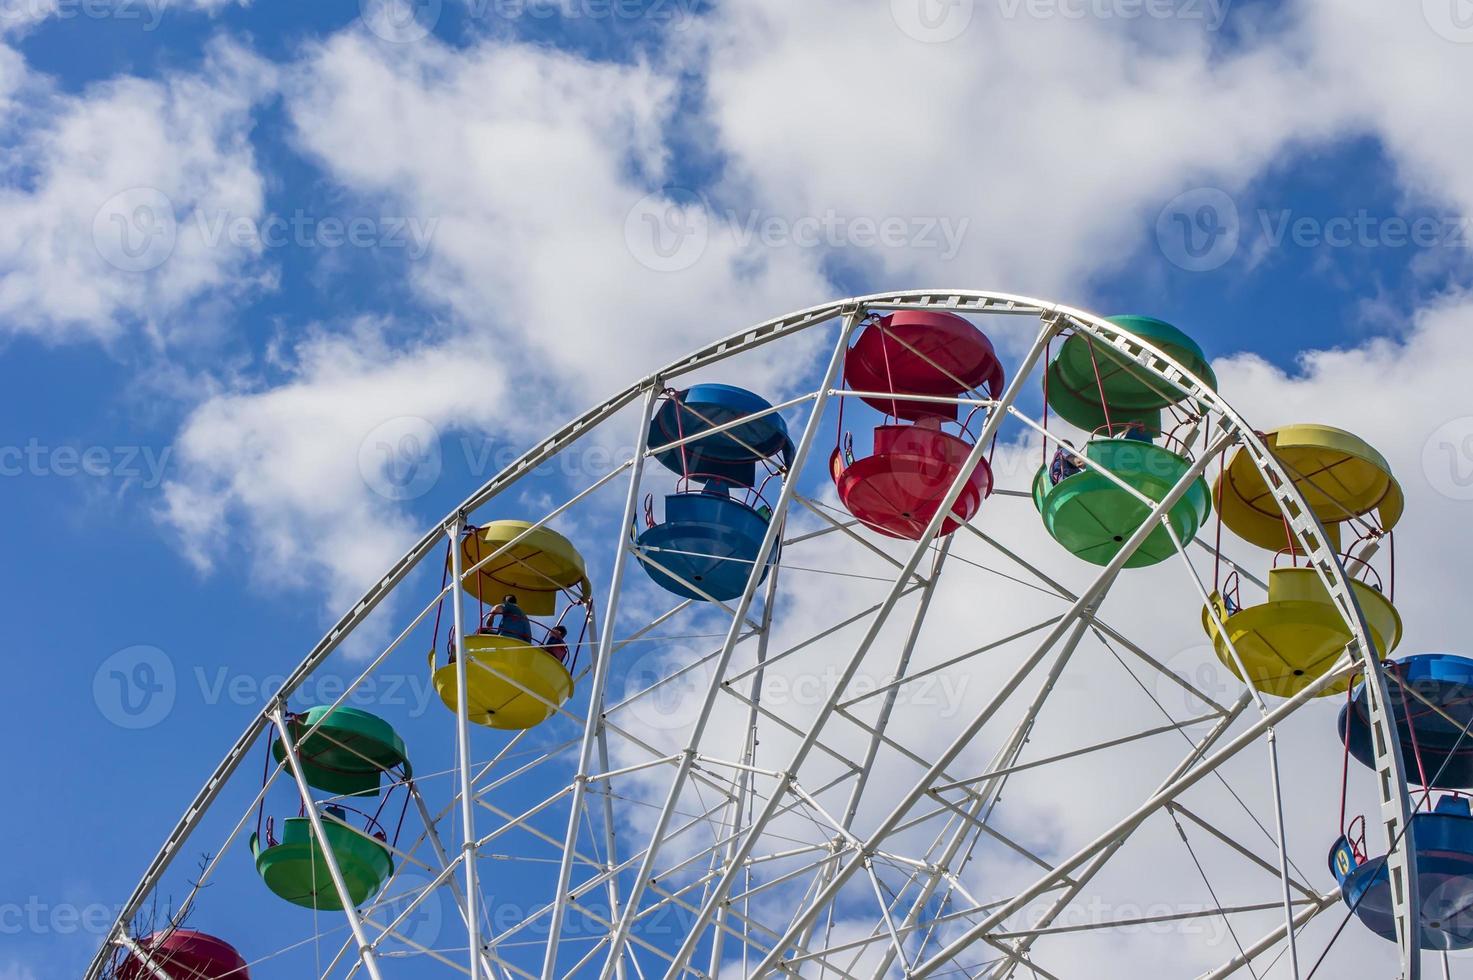 kleurrijk reuzenrad tegen blauwe lucht met wolken foto